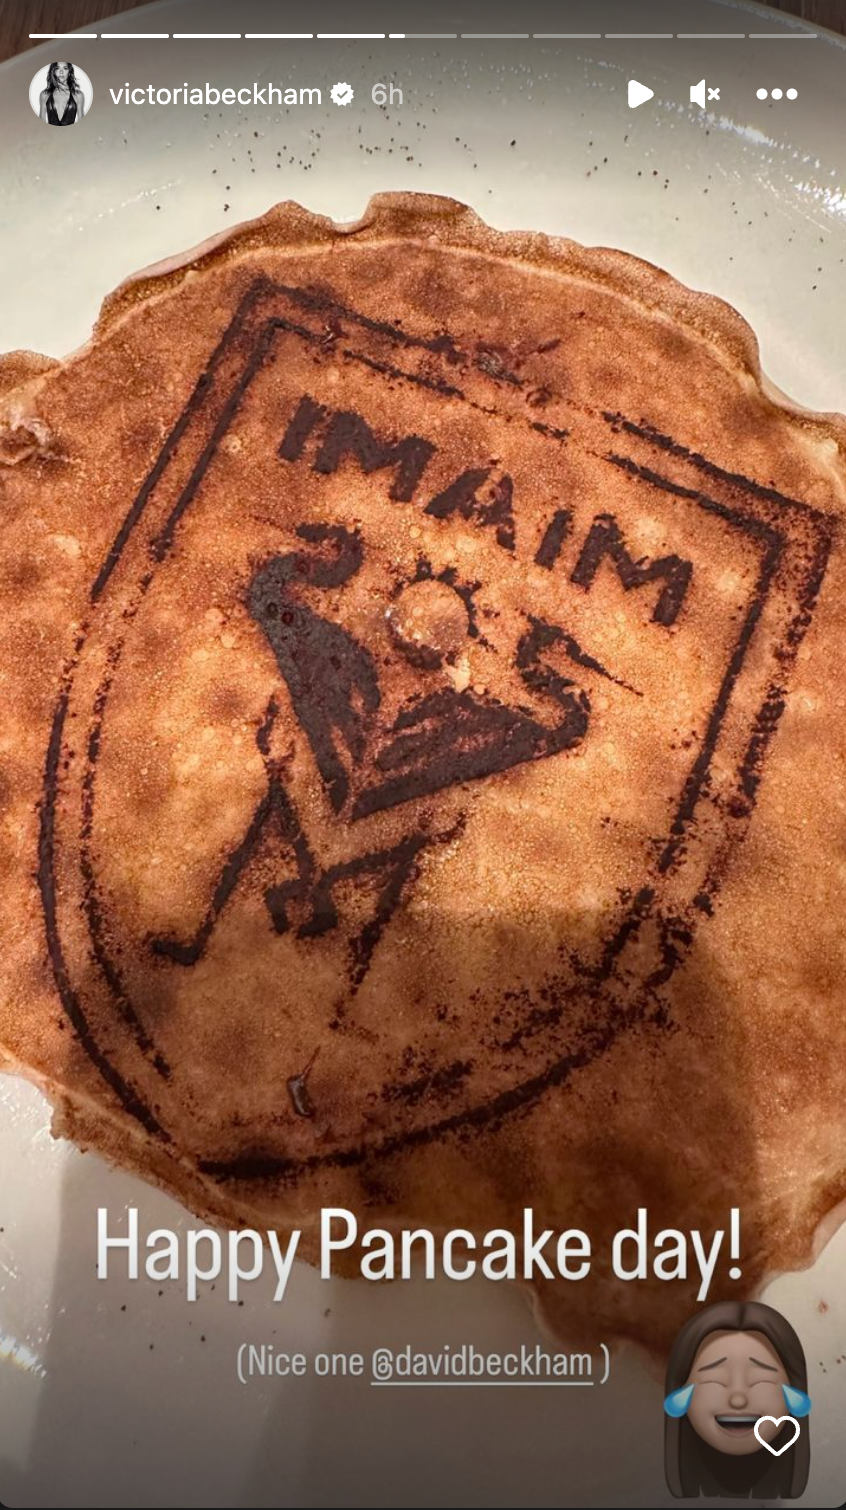 Victoria Beckham gushes over David Beckham's Pancake making skills